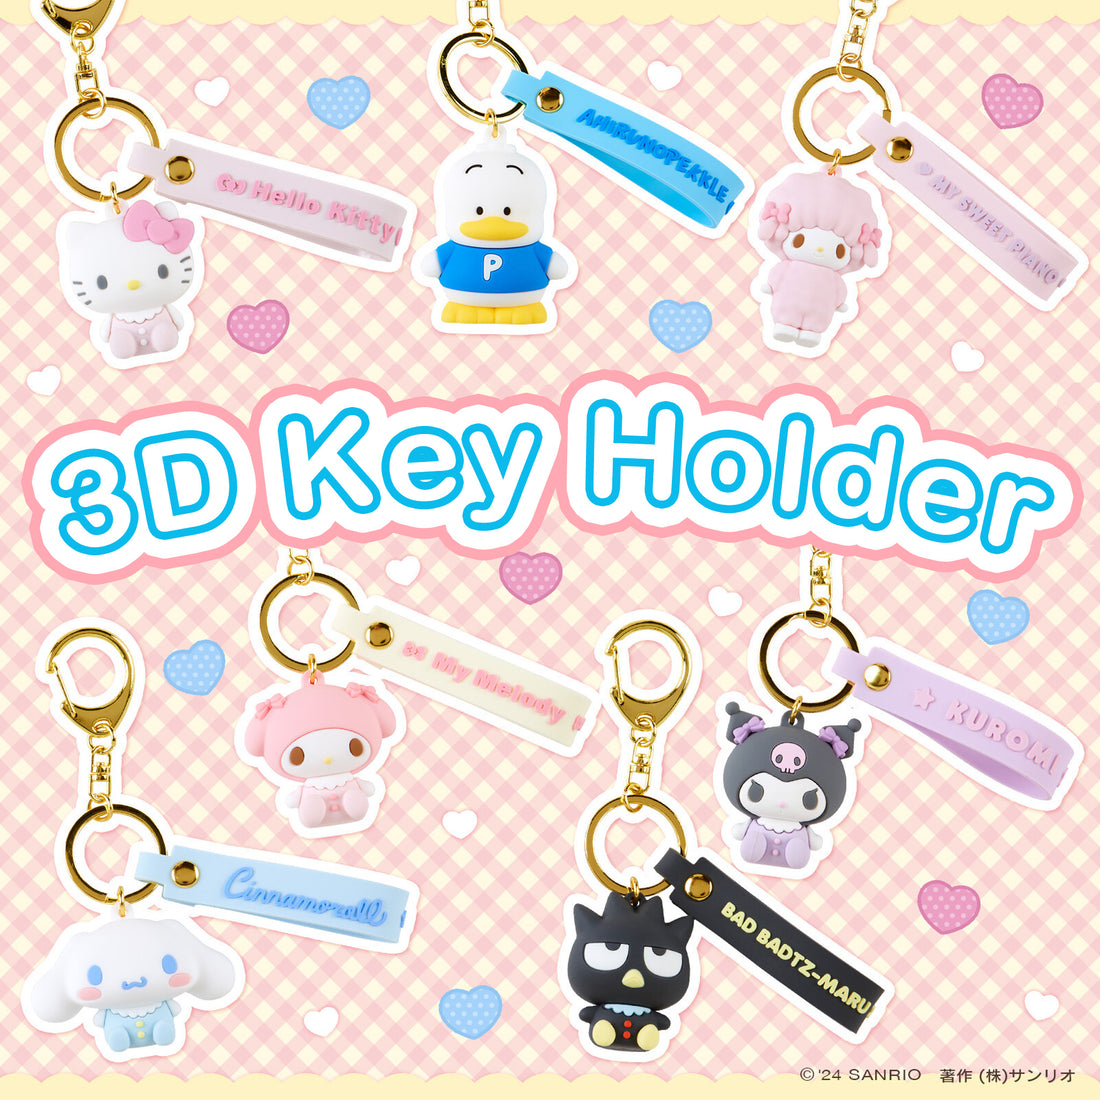 Sanrio Original 3D Keychain Baby Series